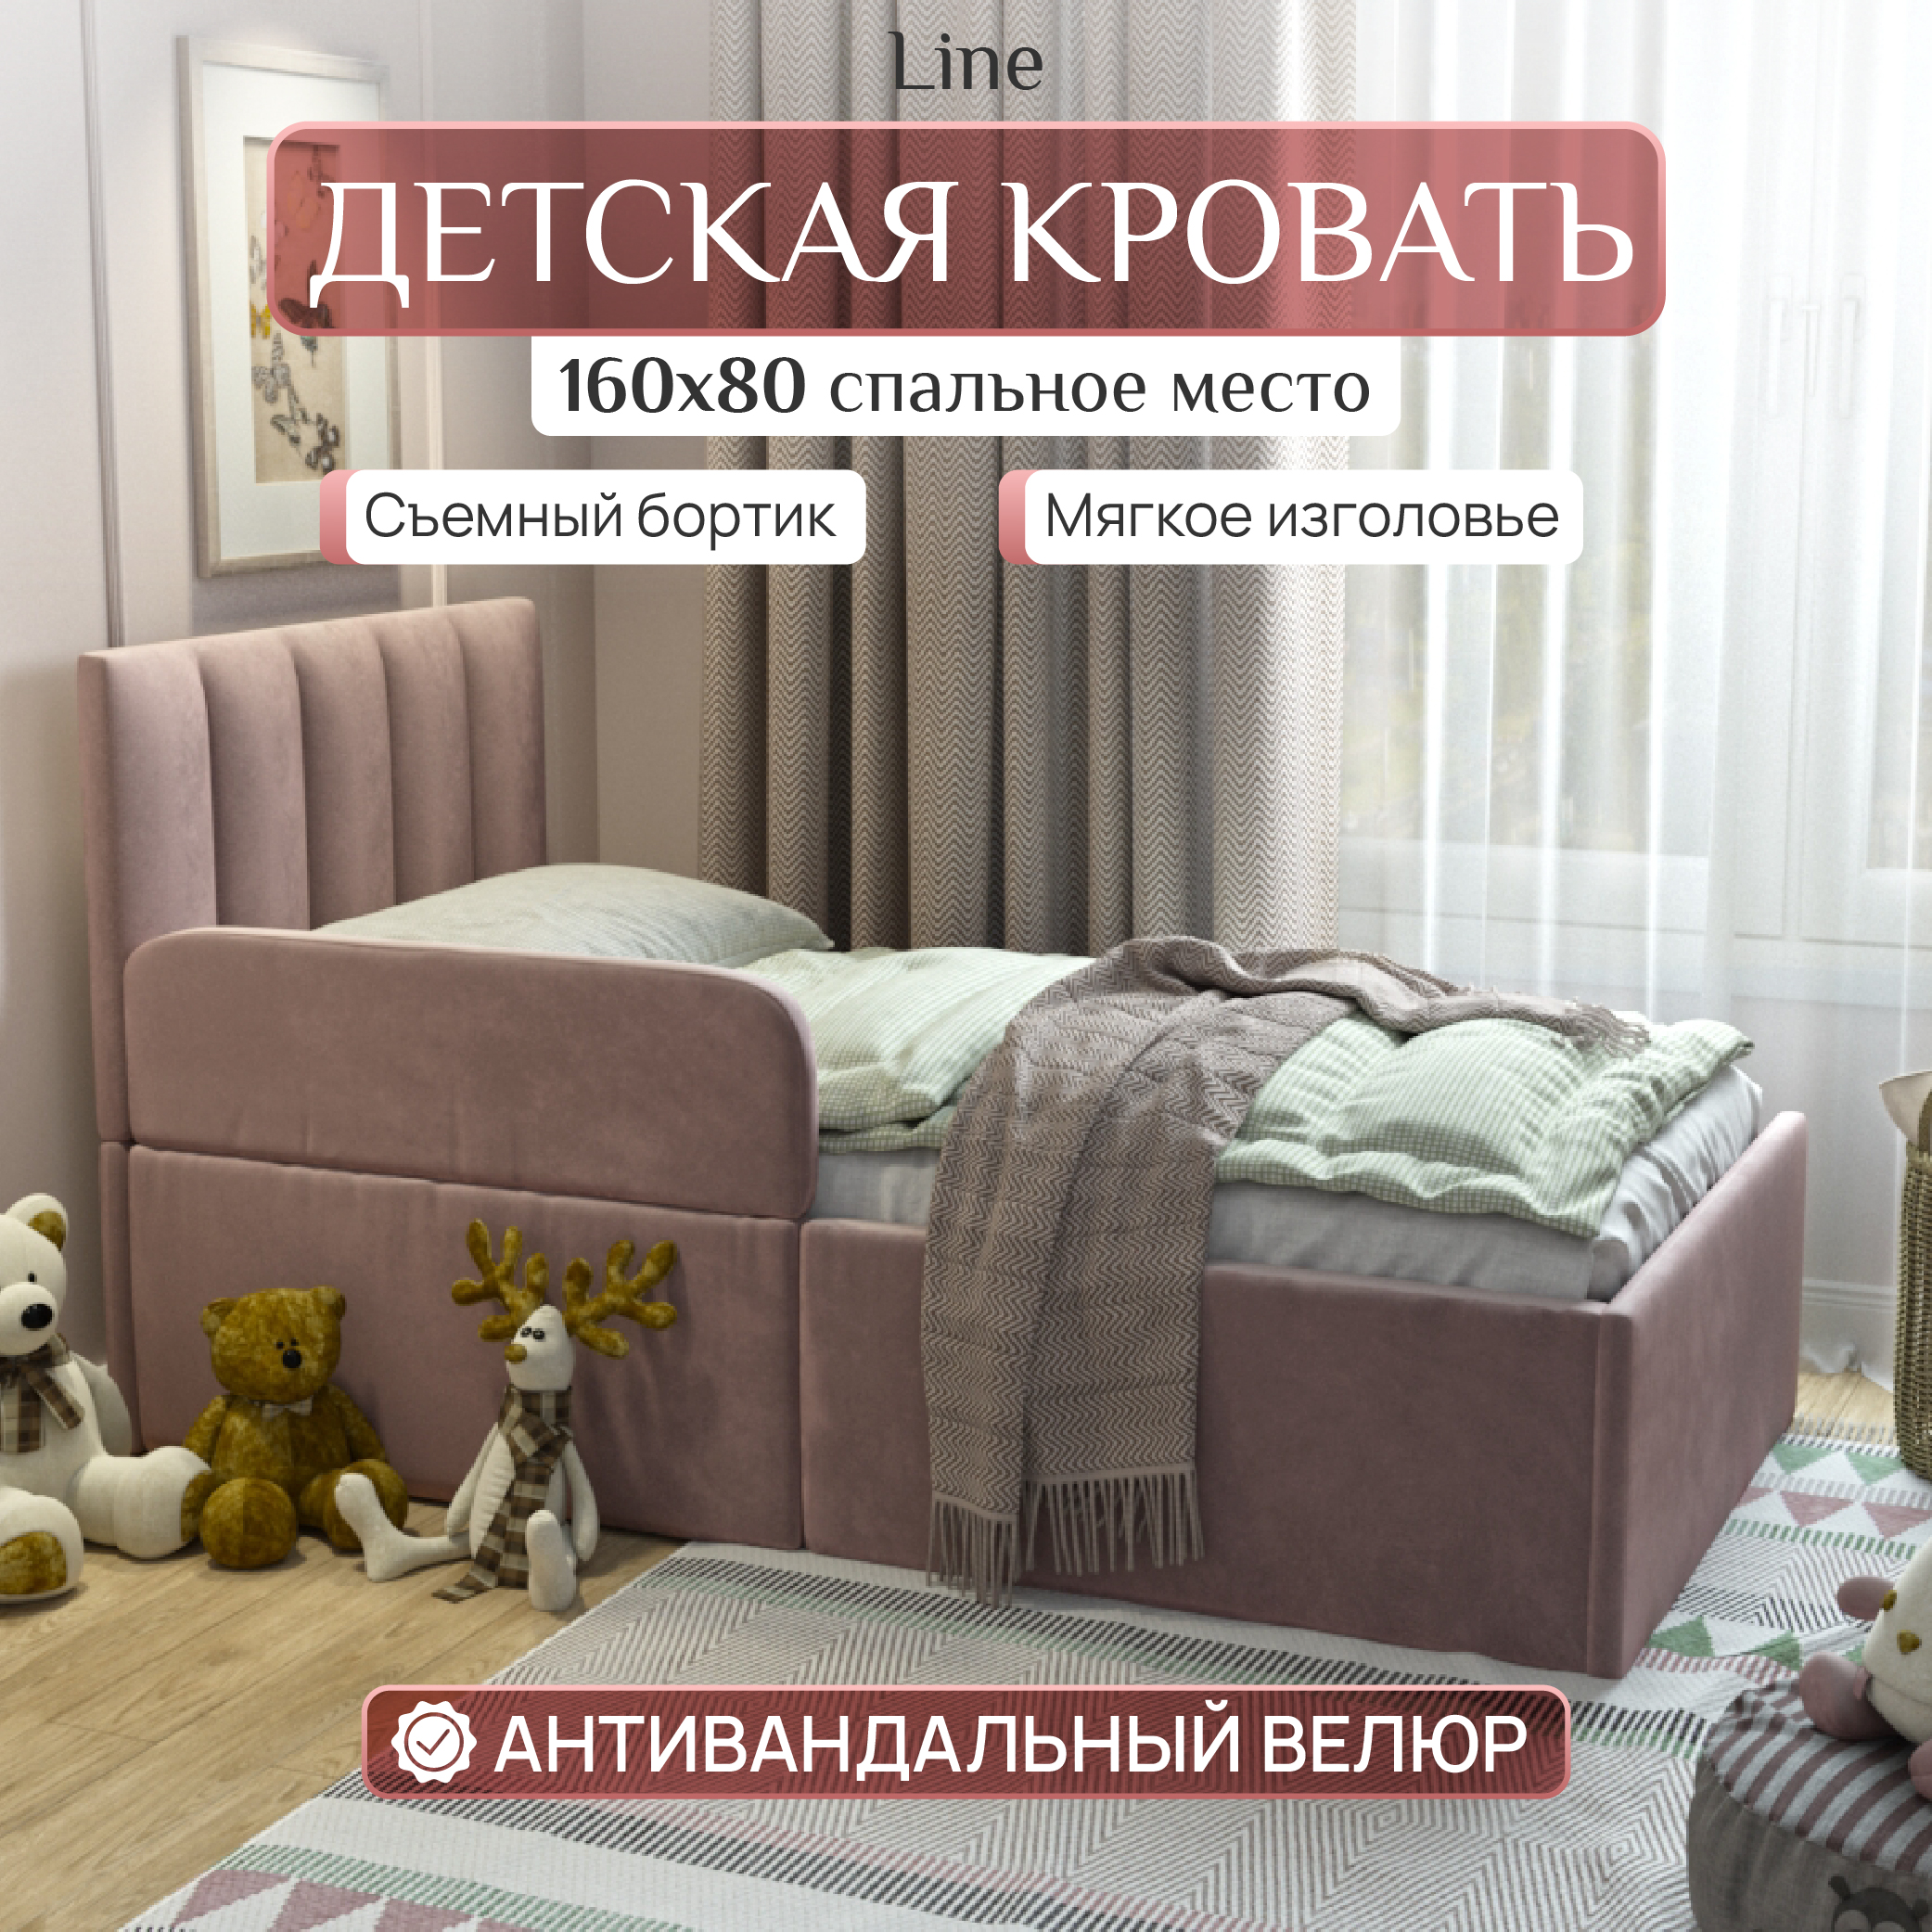 Детская кровать SleepAngel Line 160x80 см, с бортиком для детей от 3-х лет, Розовый детская кровать sweet sofa 160х80 с бортиком серый